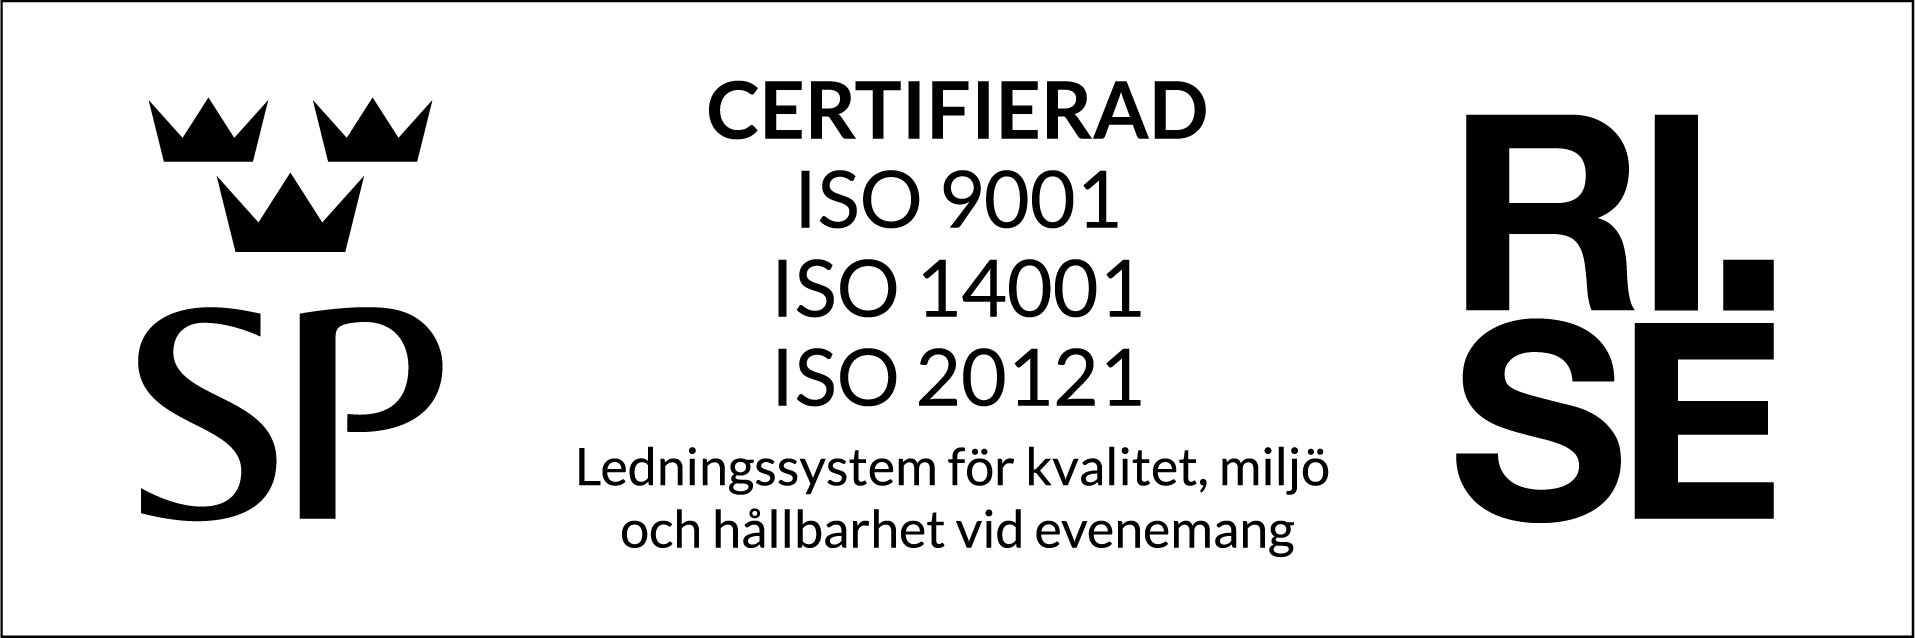 ISO_9001_14001_20121ISO_9001_14001_20121_SV